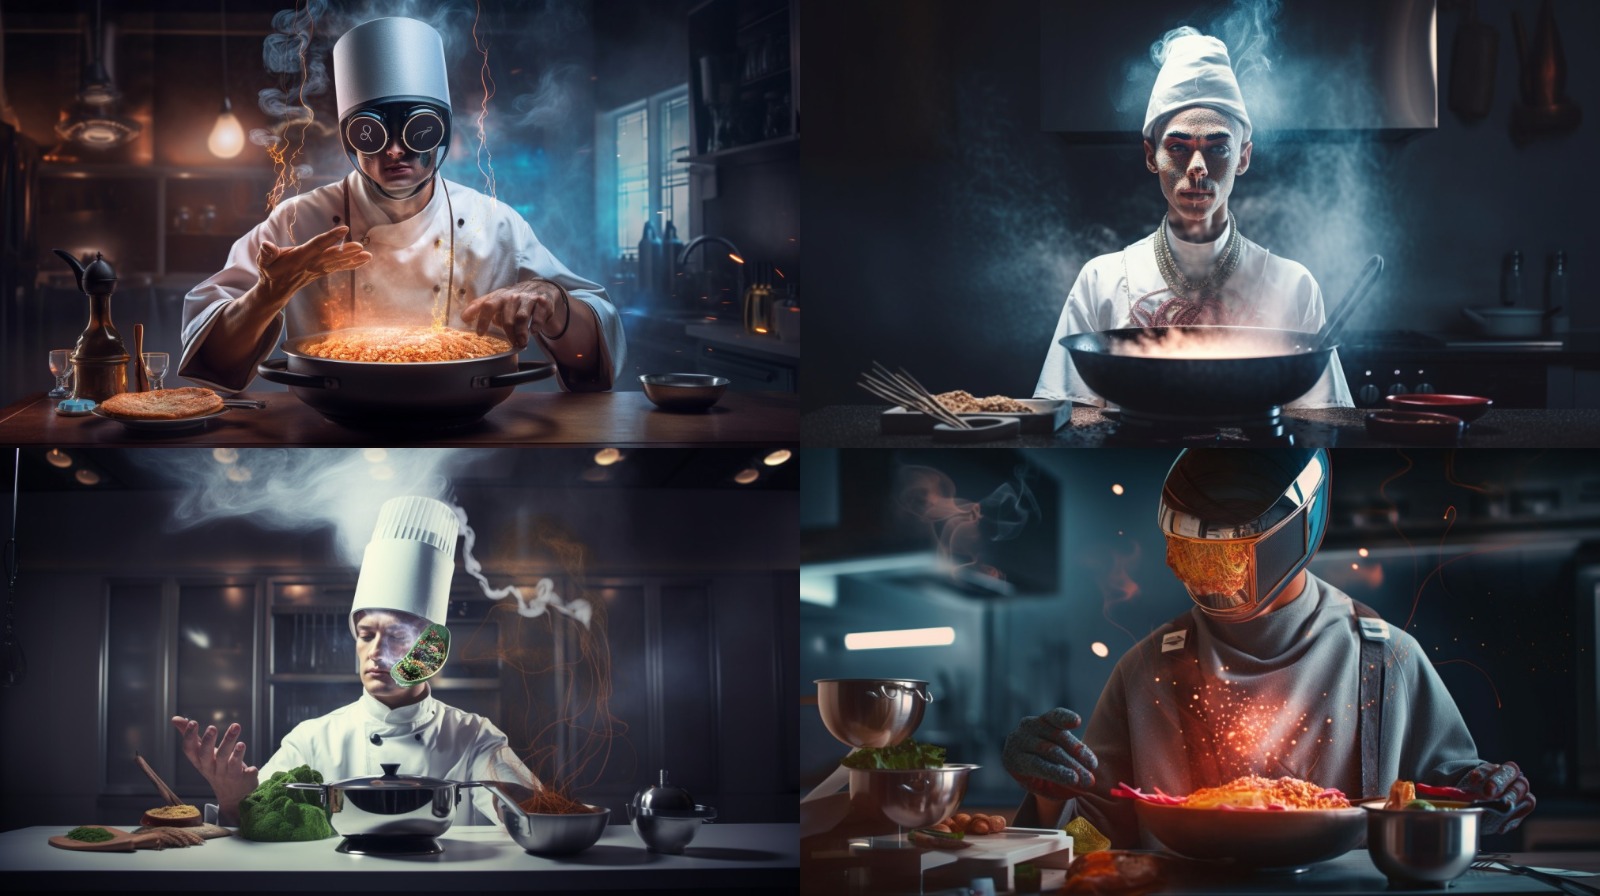 AI-interpretatie van het prompt 'portrait of futuristic cooking genius', gecreëerd door Fabian Krausz met Midjourney